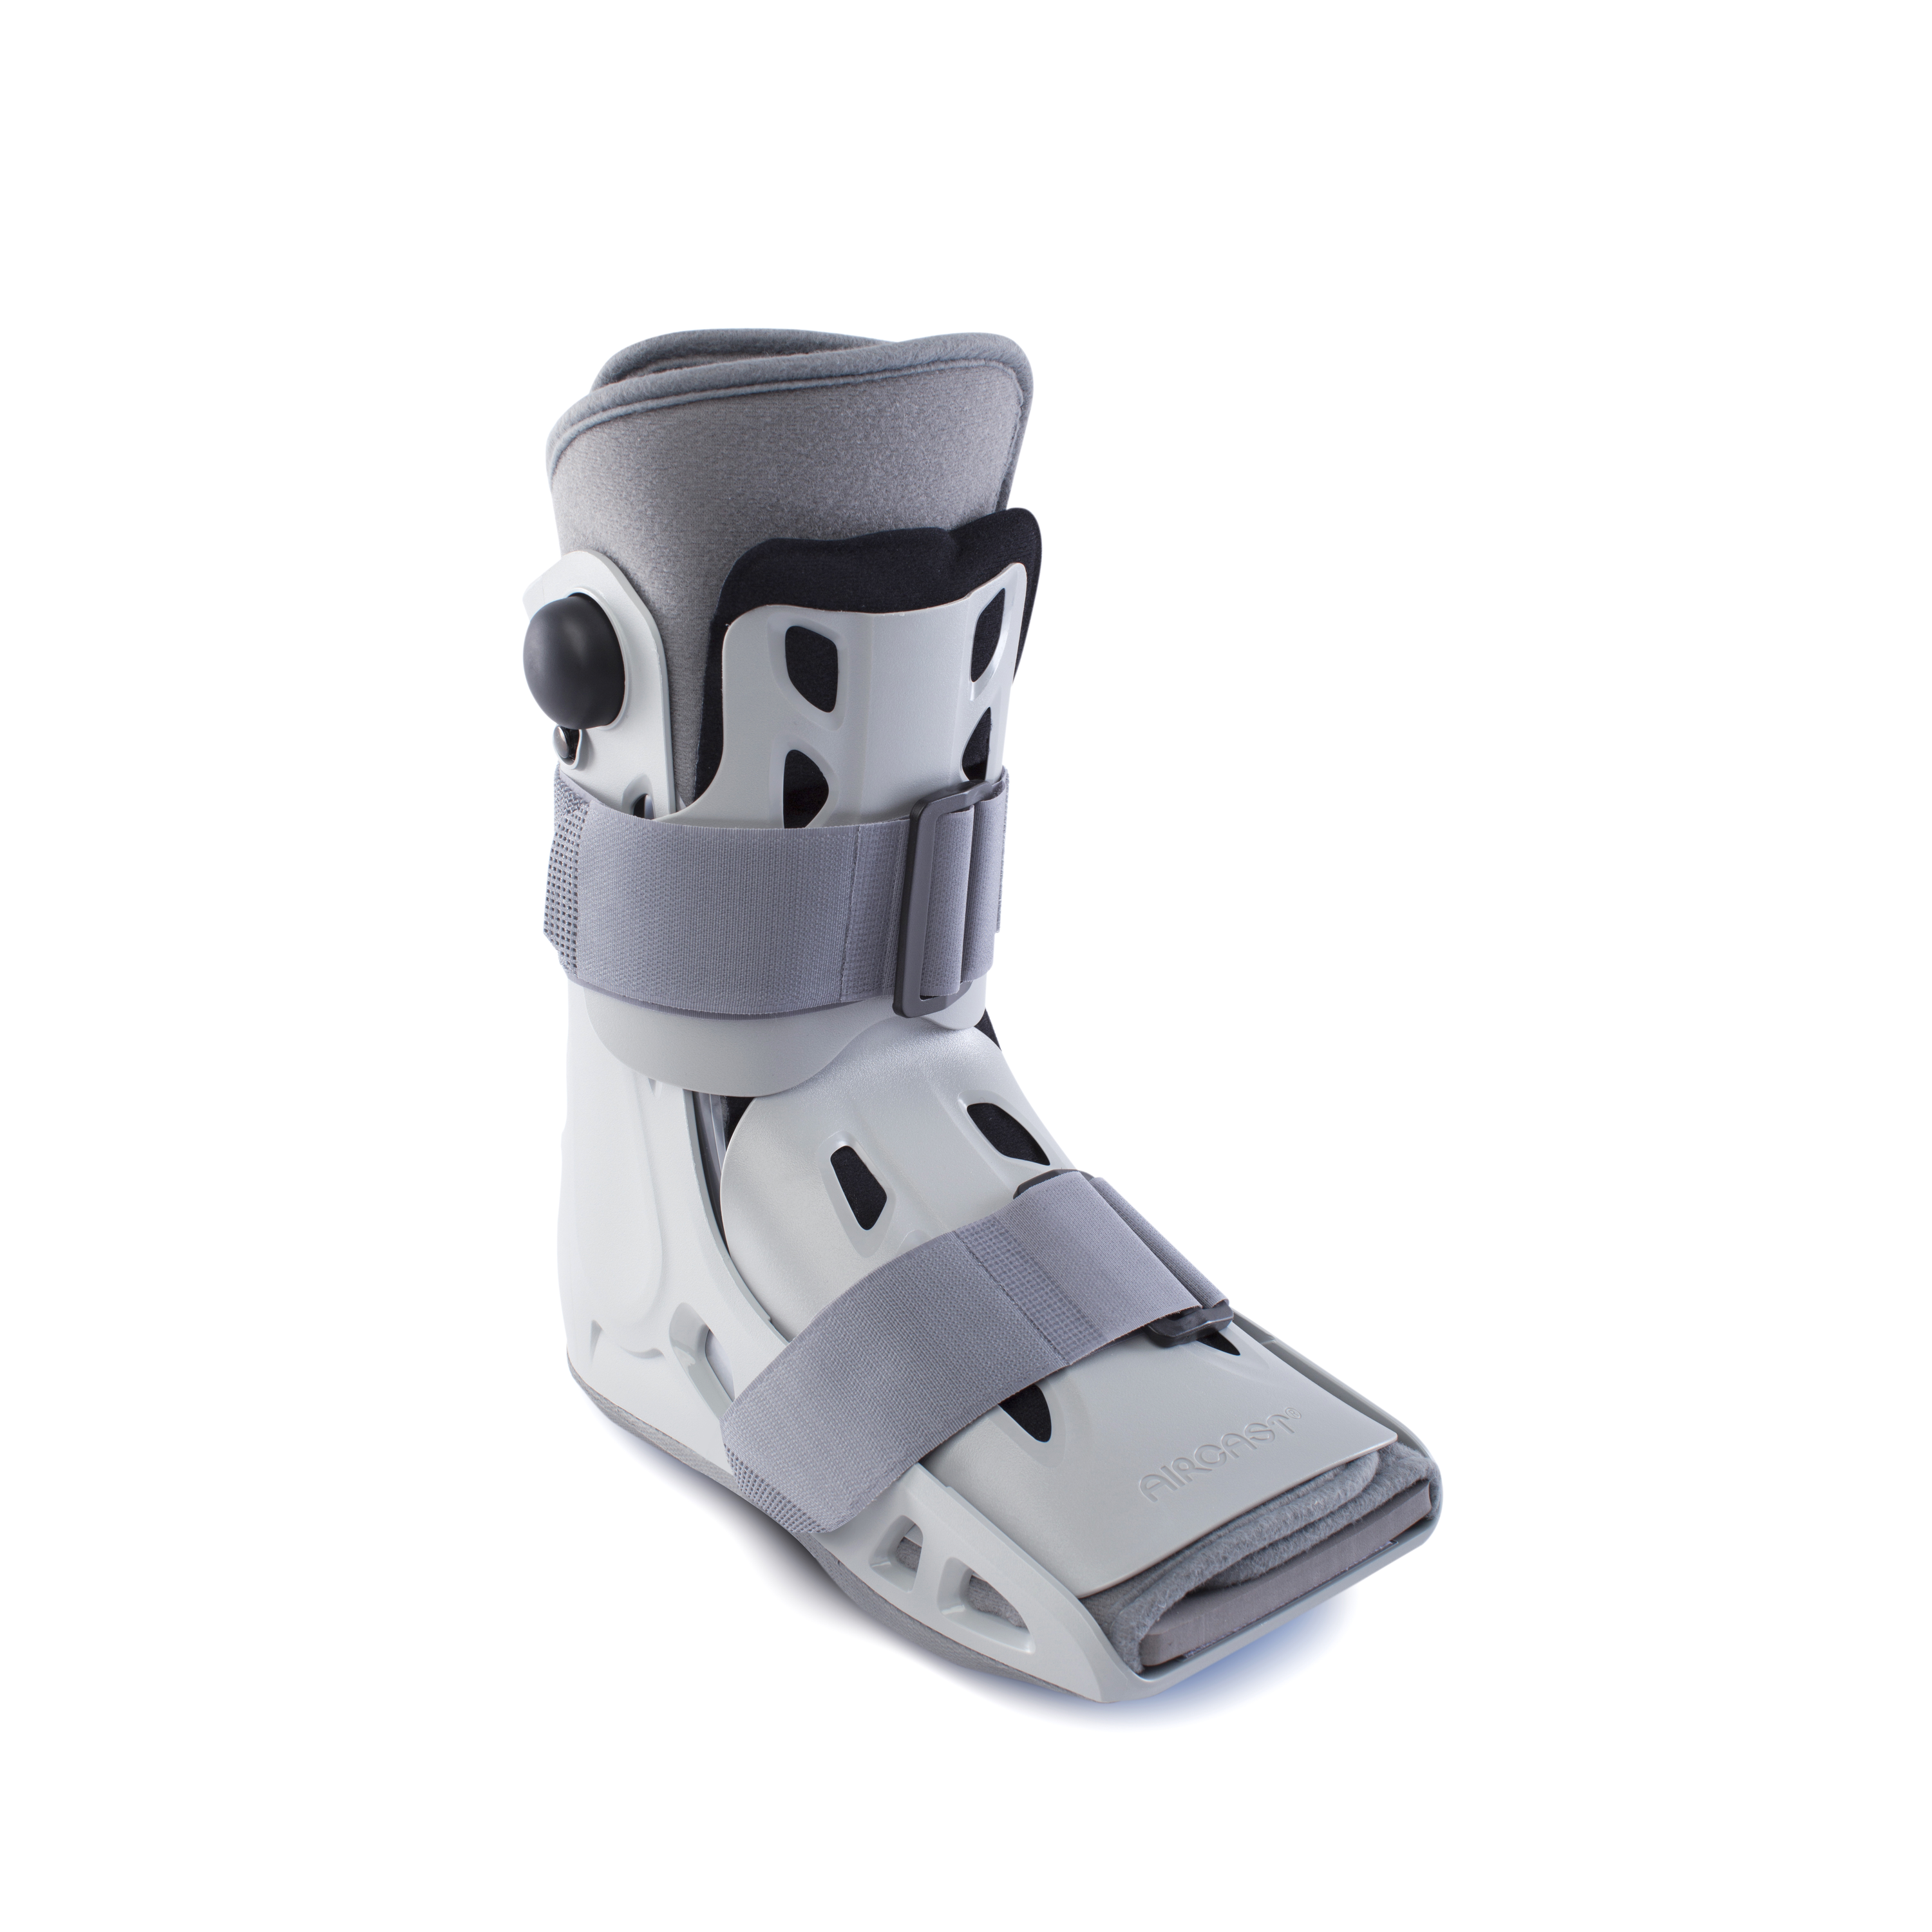 Produktbild AIRCAST® Airselect™ Short Walker, Kurze Unterschenkel-Fuß-Orthese zur Immobilisierung in vorgegebener Position